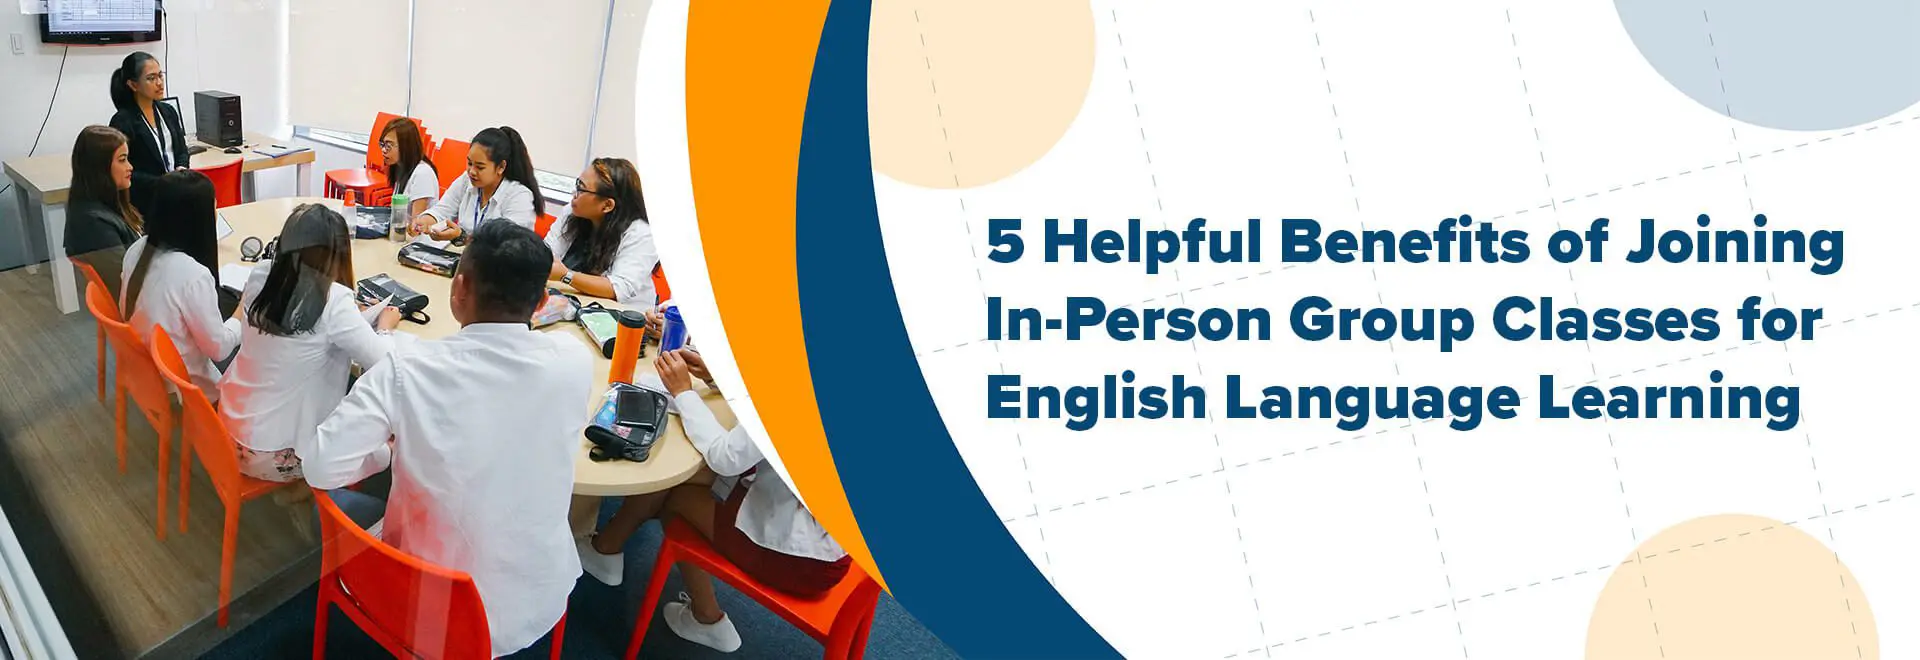 5 lợi ích khi học tiếng Anh trong lớp nhóm trực tiếp